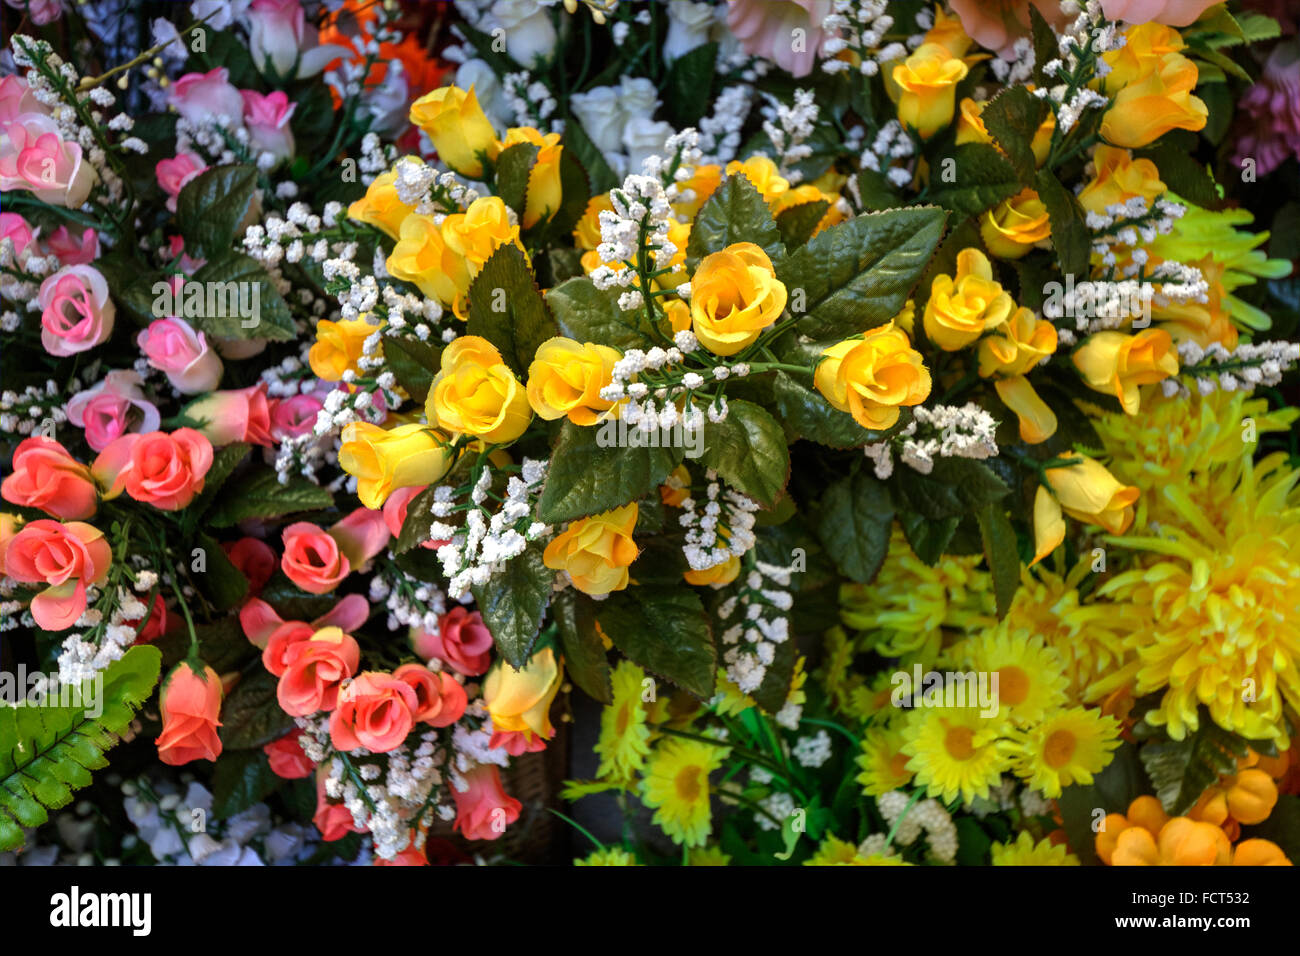 Assortiment de fleurs une sélection de fleurs, de feuilles et de feuillage. Porto, Portugal, Européen, Europe, Marché, mode de vie Banque D'Images